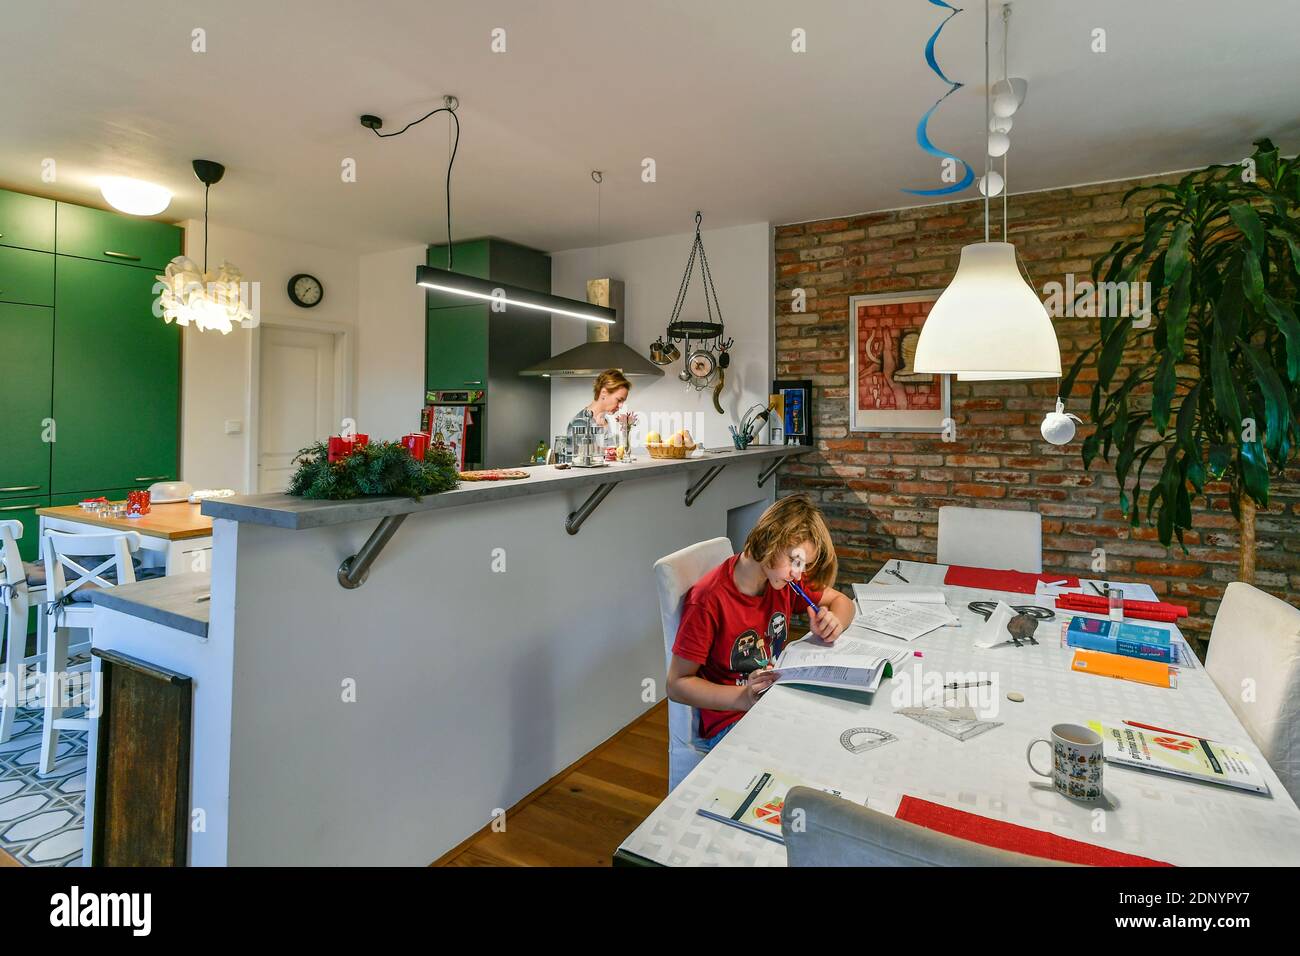 un écolier fait ses travaux dans la cuisine tandis que sa mère cuisiniers à l'heure de l'avent Banque D'Images